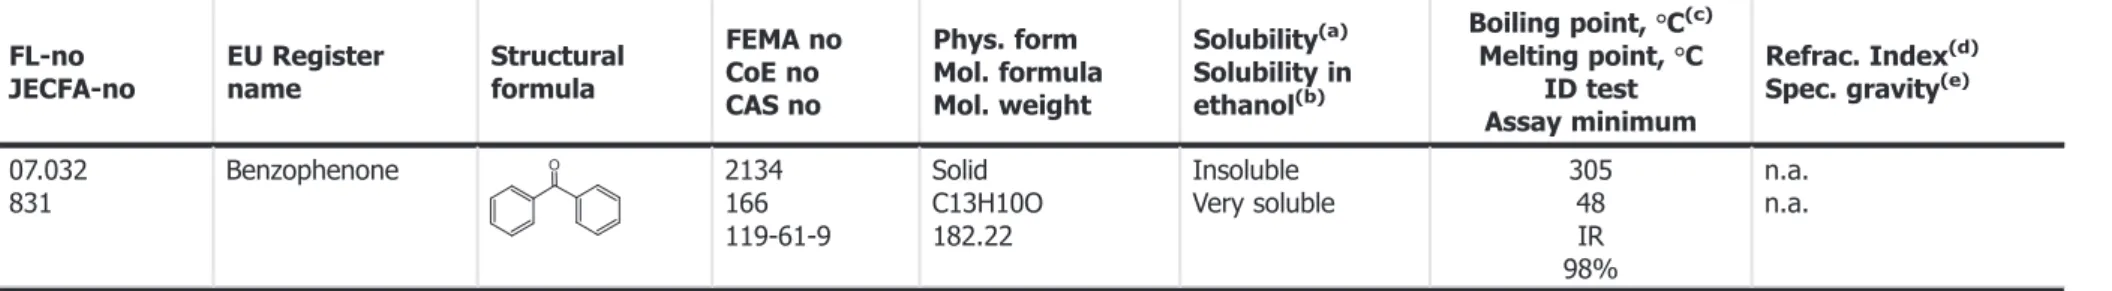 Table 1: Summary of speci ﬁ cations for the substance benzophenone (EFSA, 2008) FL-no JECFA-no EU Registername Structuralformula FEMA noCoE no CAS no Phys